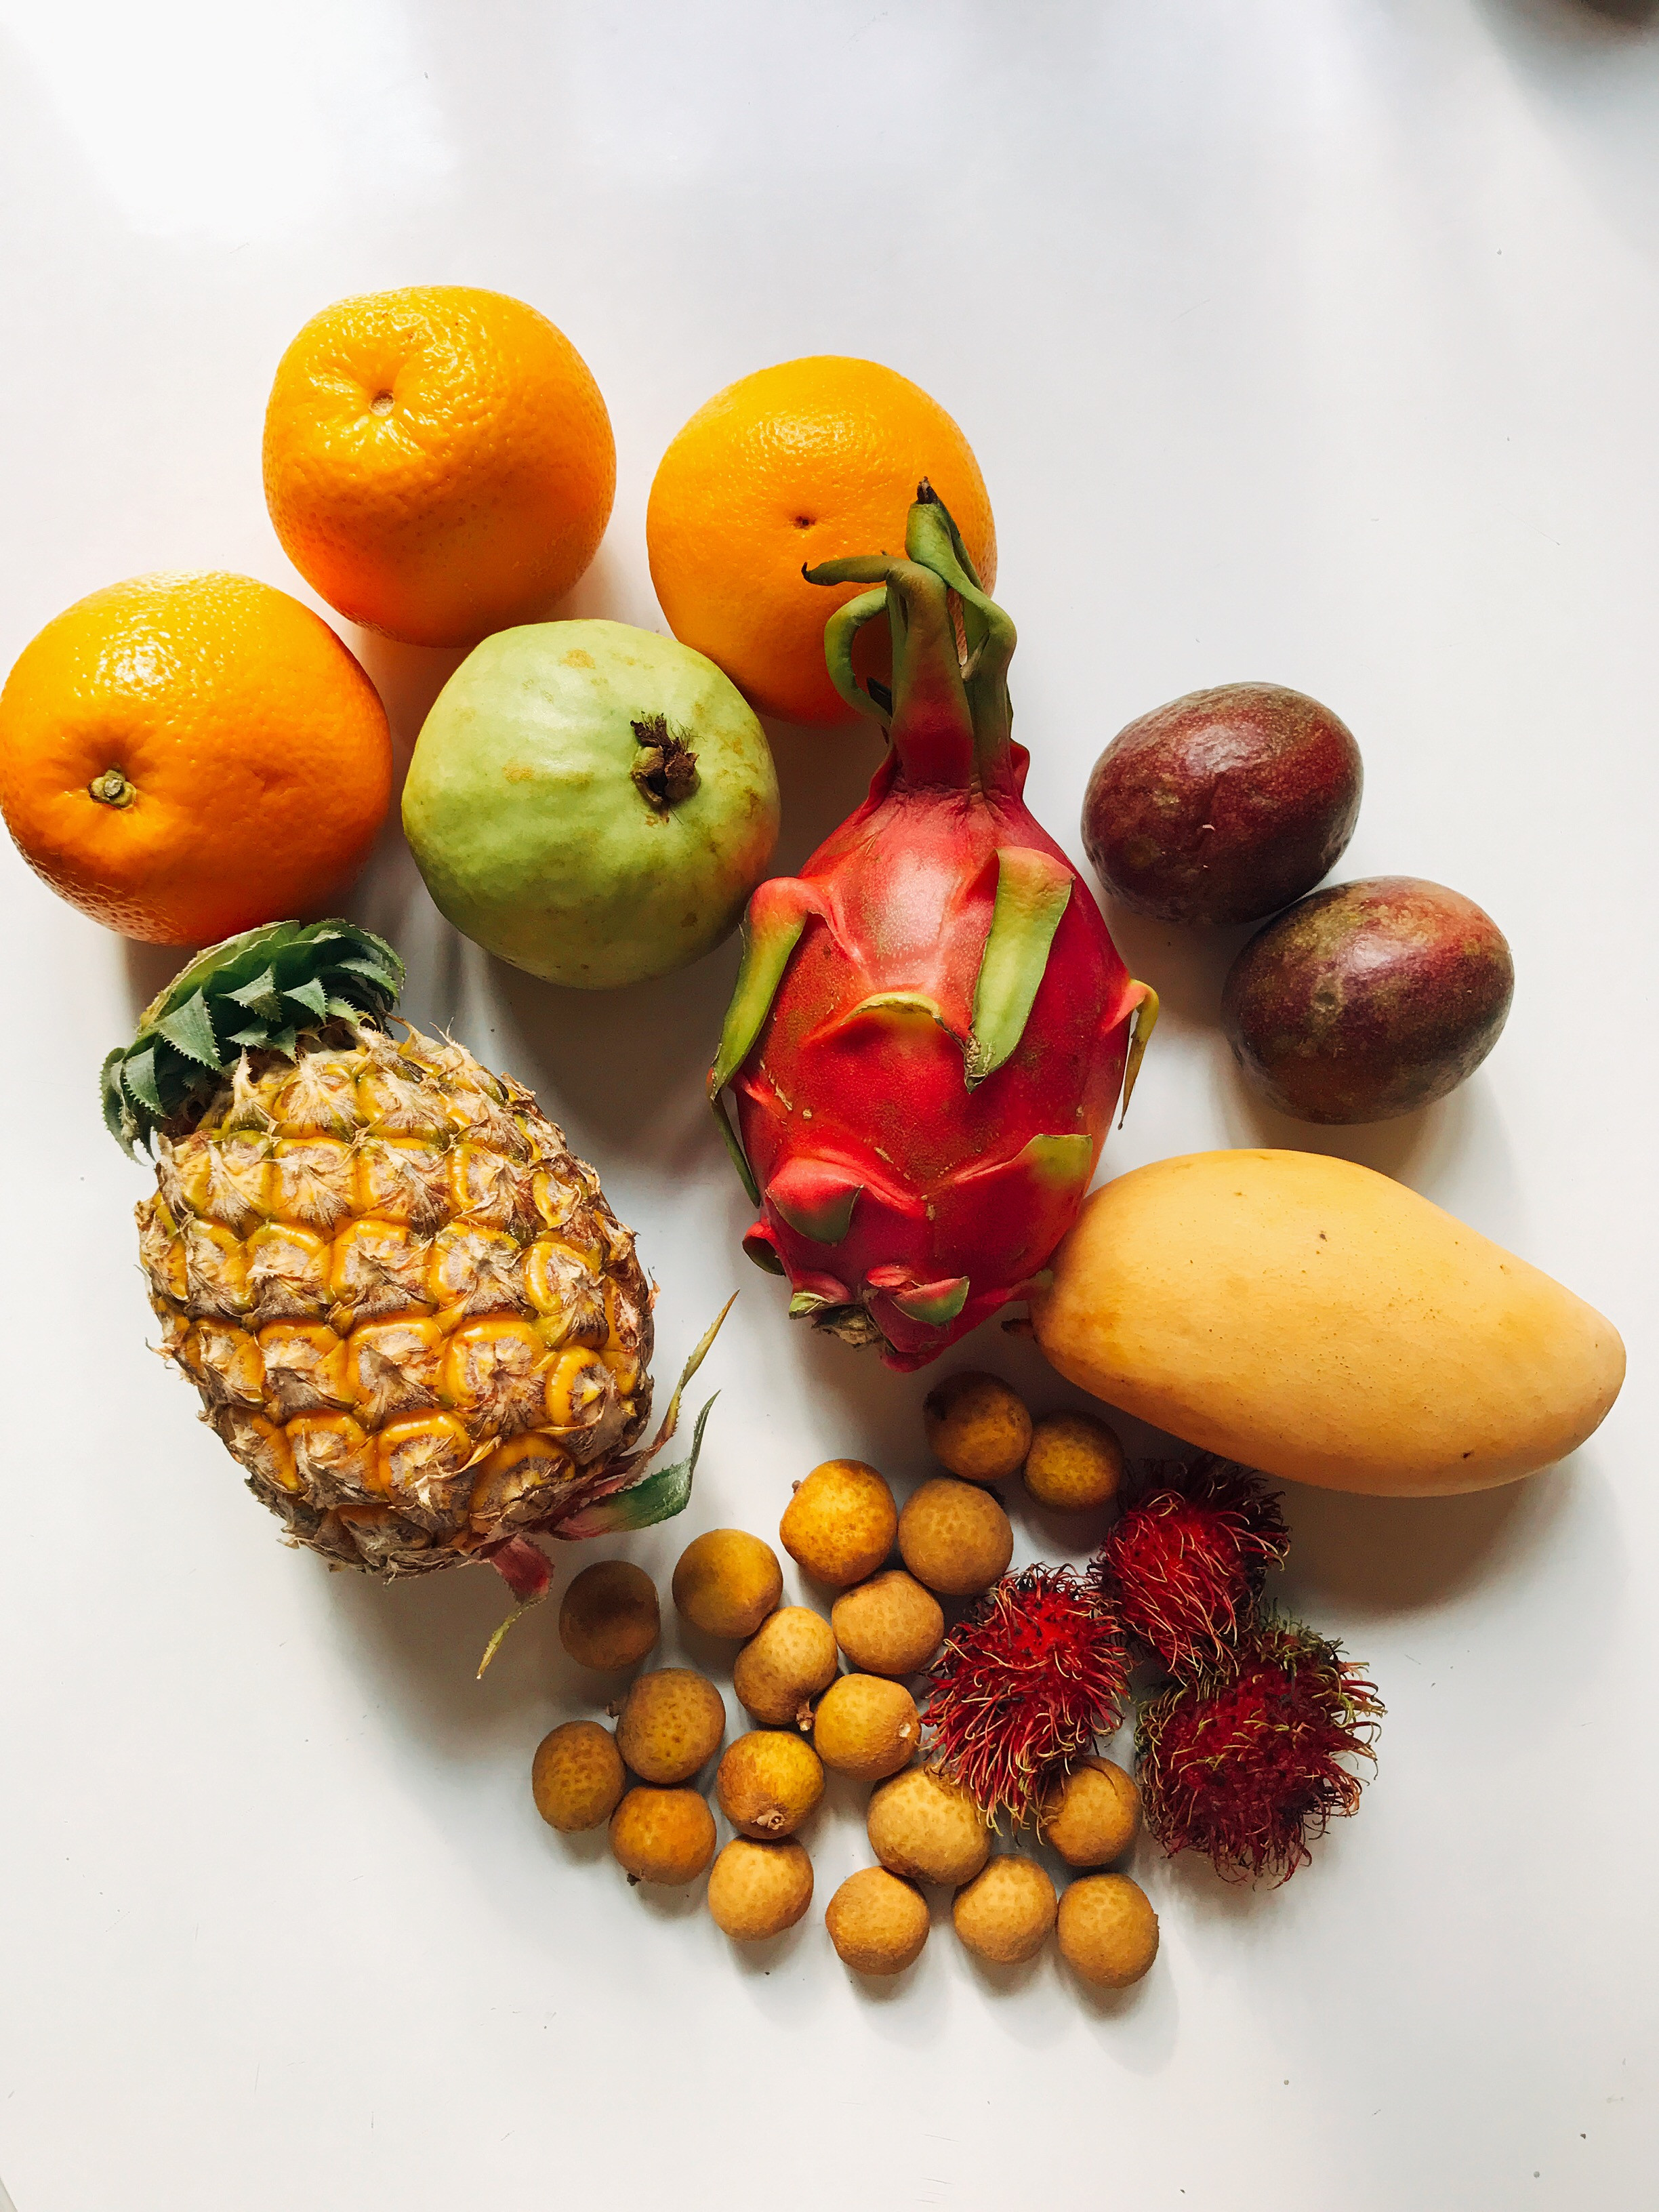 Фото фруктов и их названия. Фрукт Нубия. Цитрус мевалар. Аранкаш фрукт. Карибиан Экзотик фрукт.